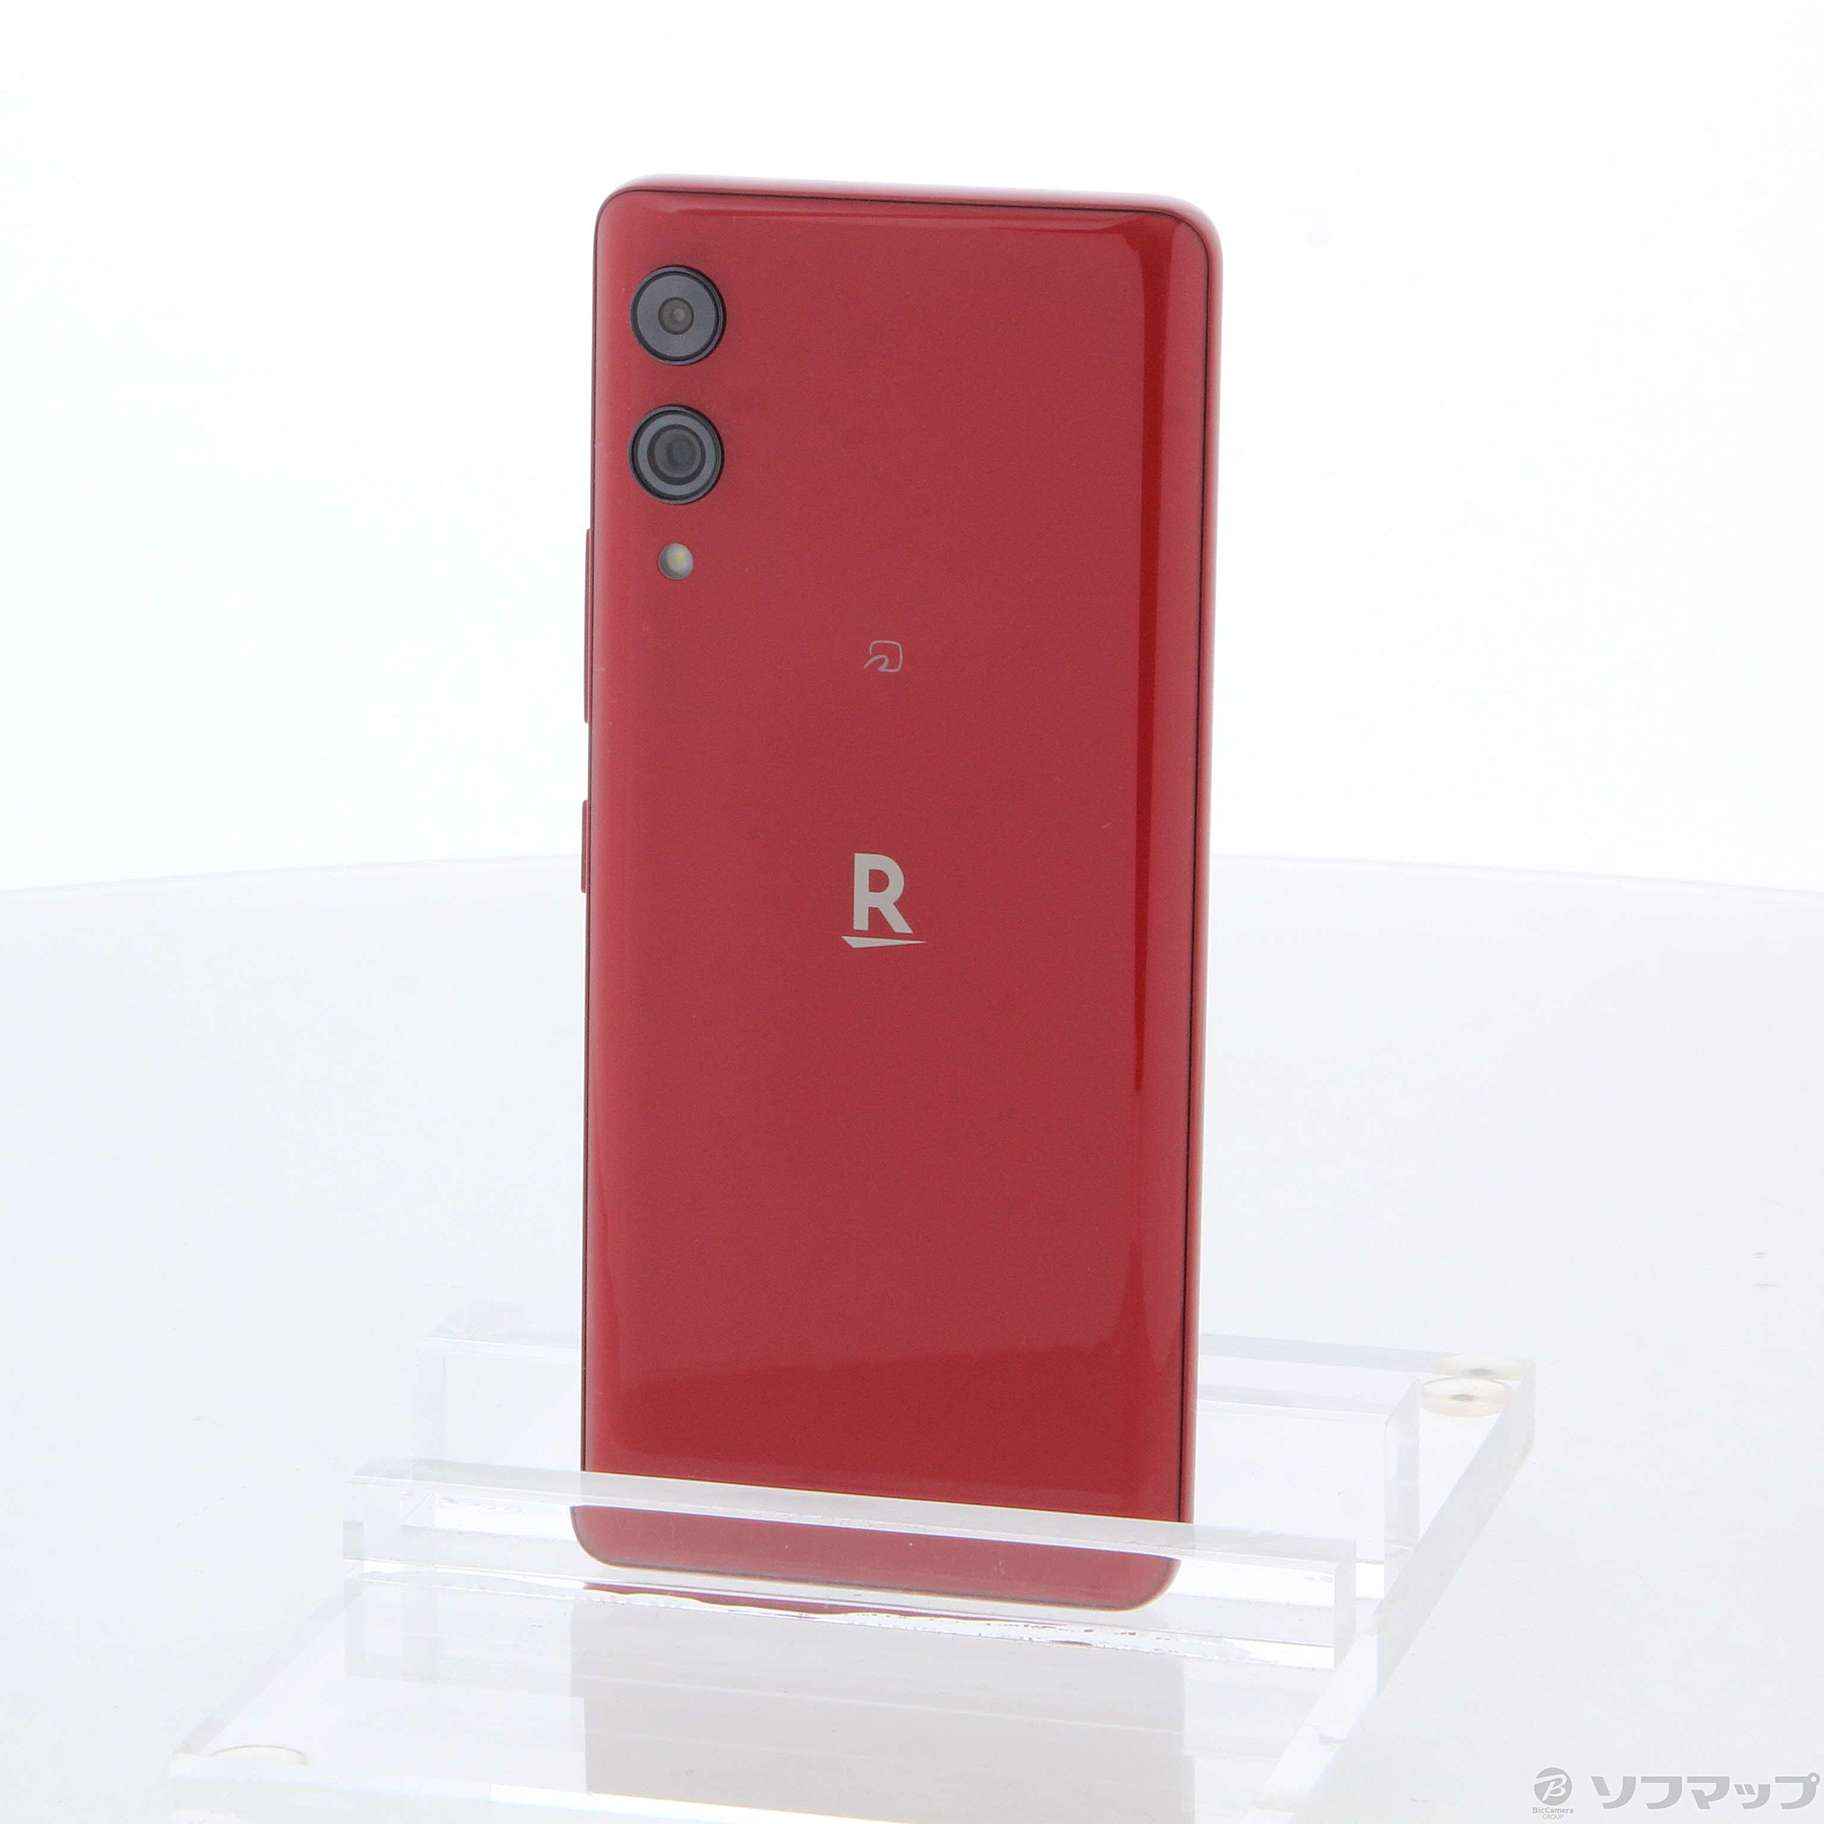 Rakuten Hand 5G クリムゾンレッド 128GB - 携帯電話本体